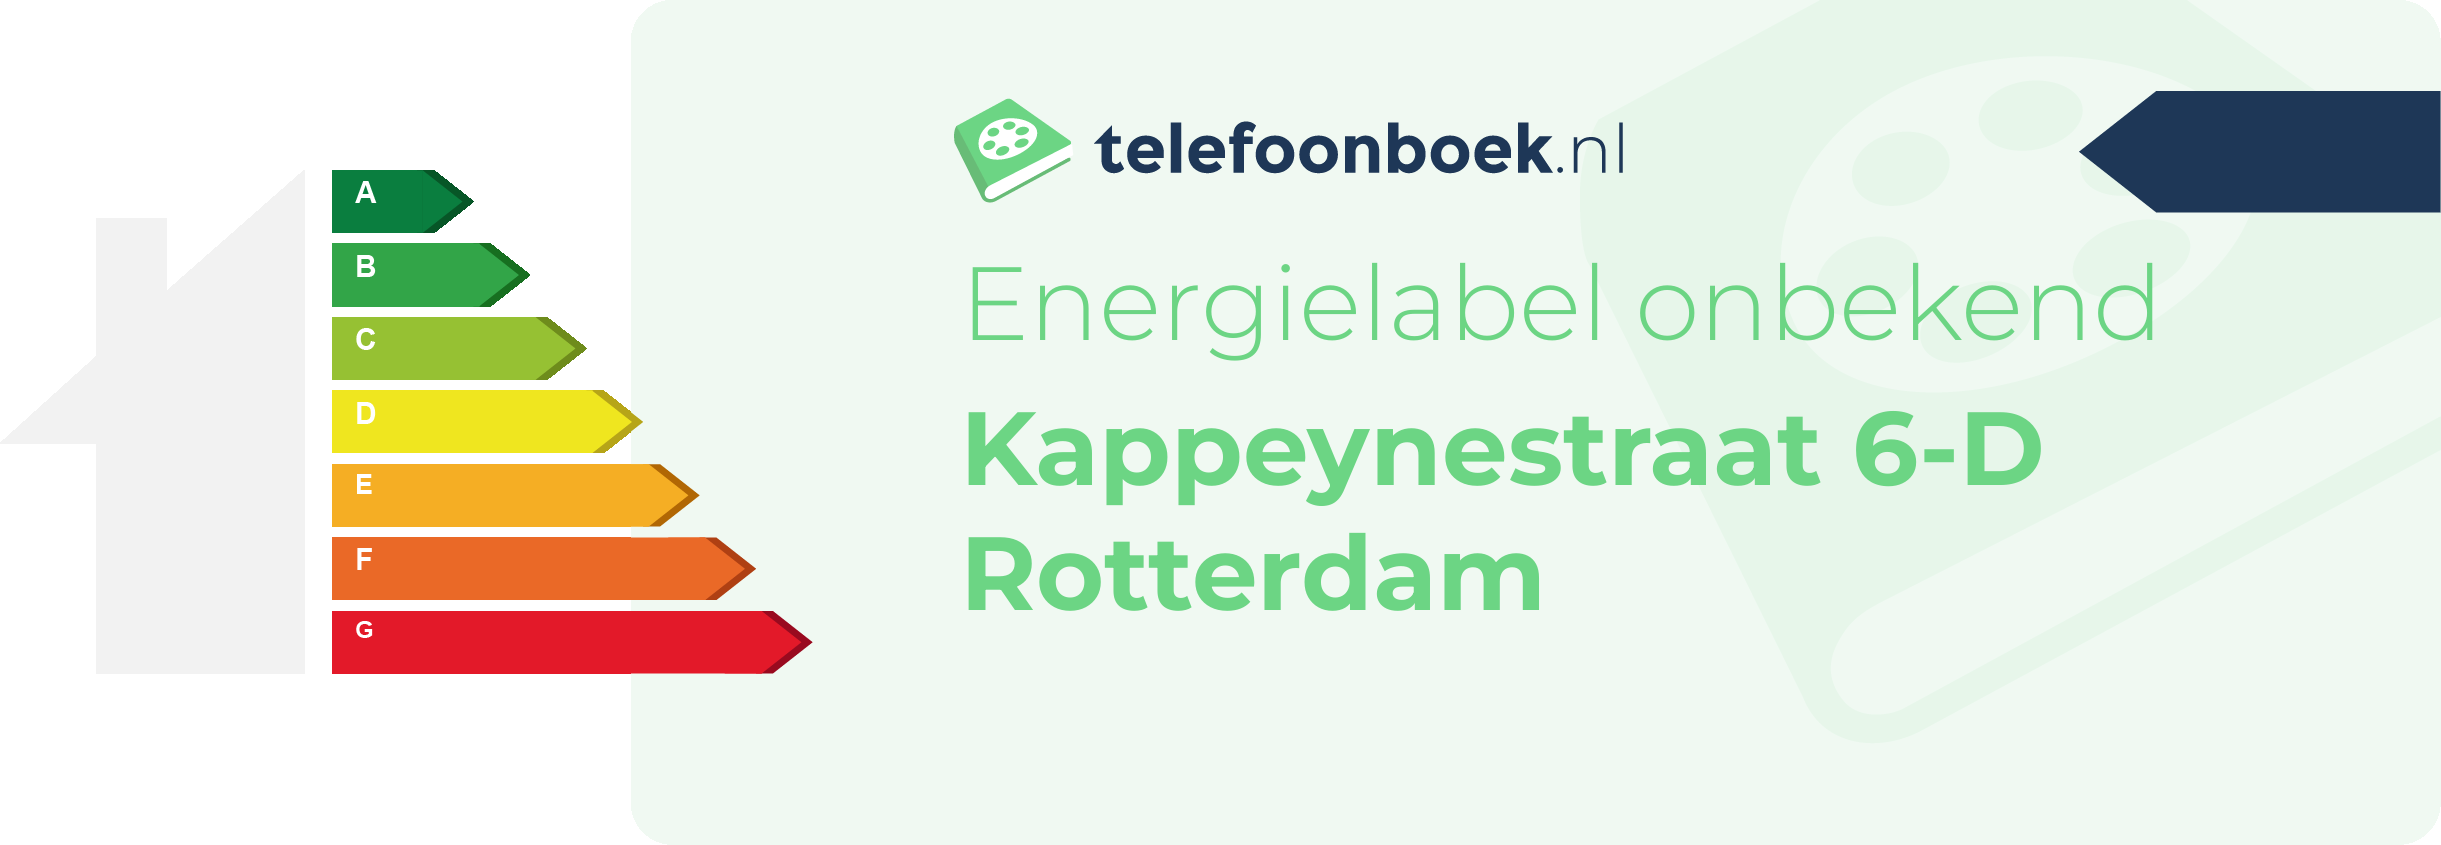 Energielabel Kappeynestraat 6-D Rotterdam